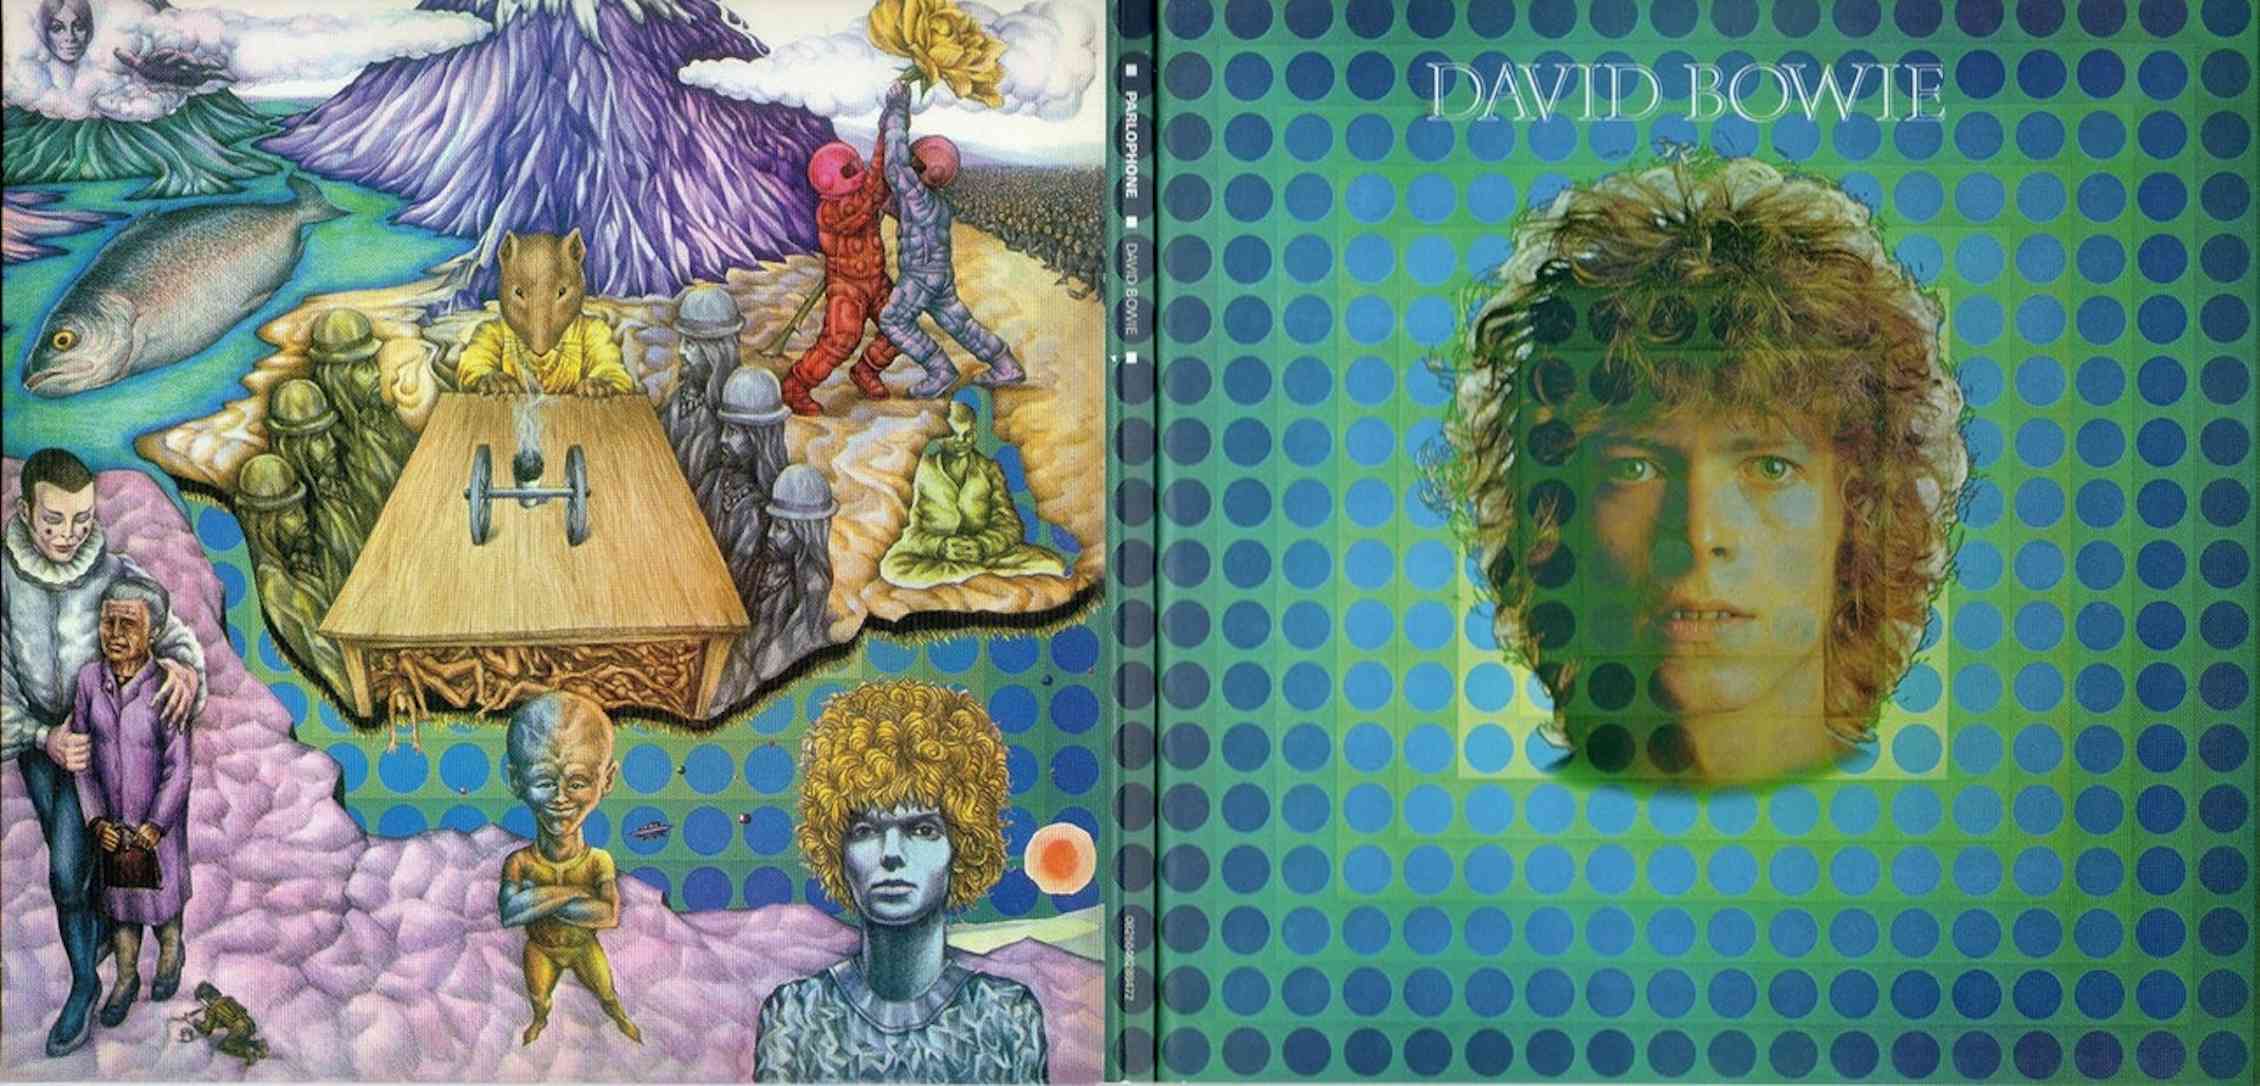 David bowie's space oddity. Дэвид Боуи 1969. David Bowie 1969 album. Space Oddity 1969. David Bowie Space Oddity 1969.